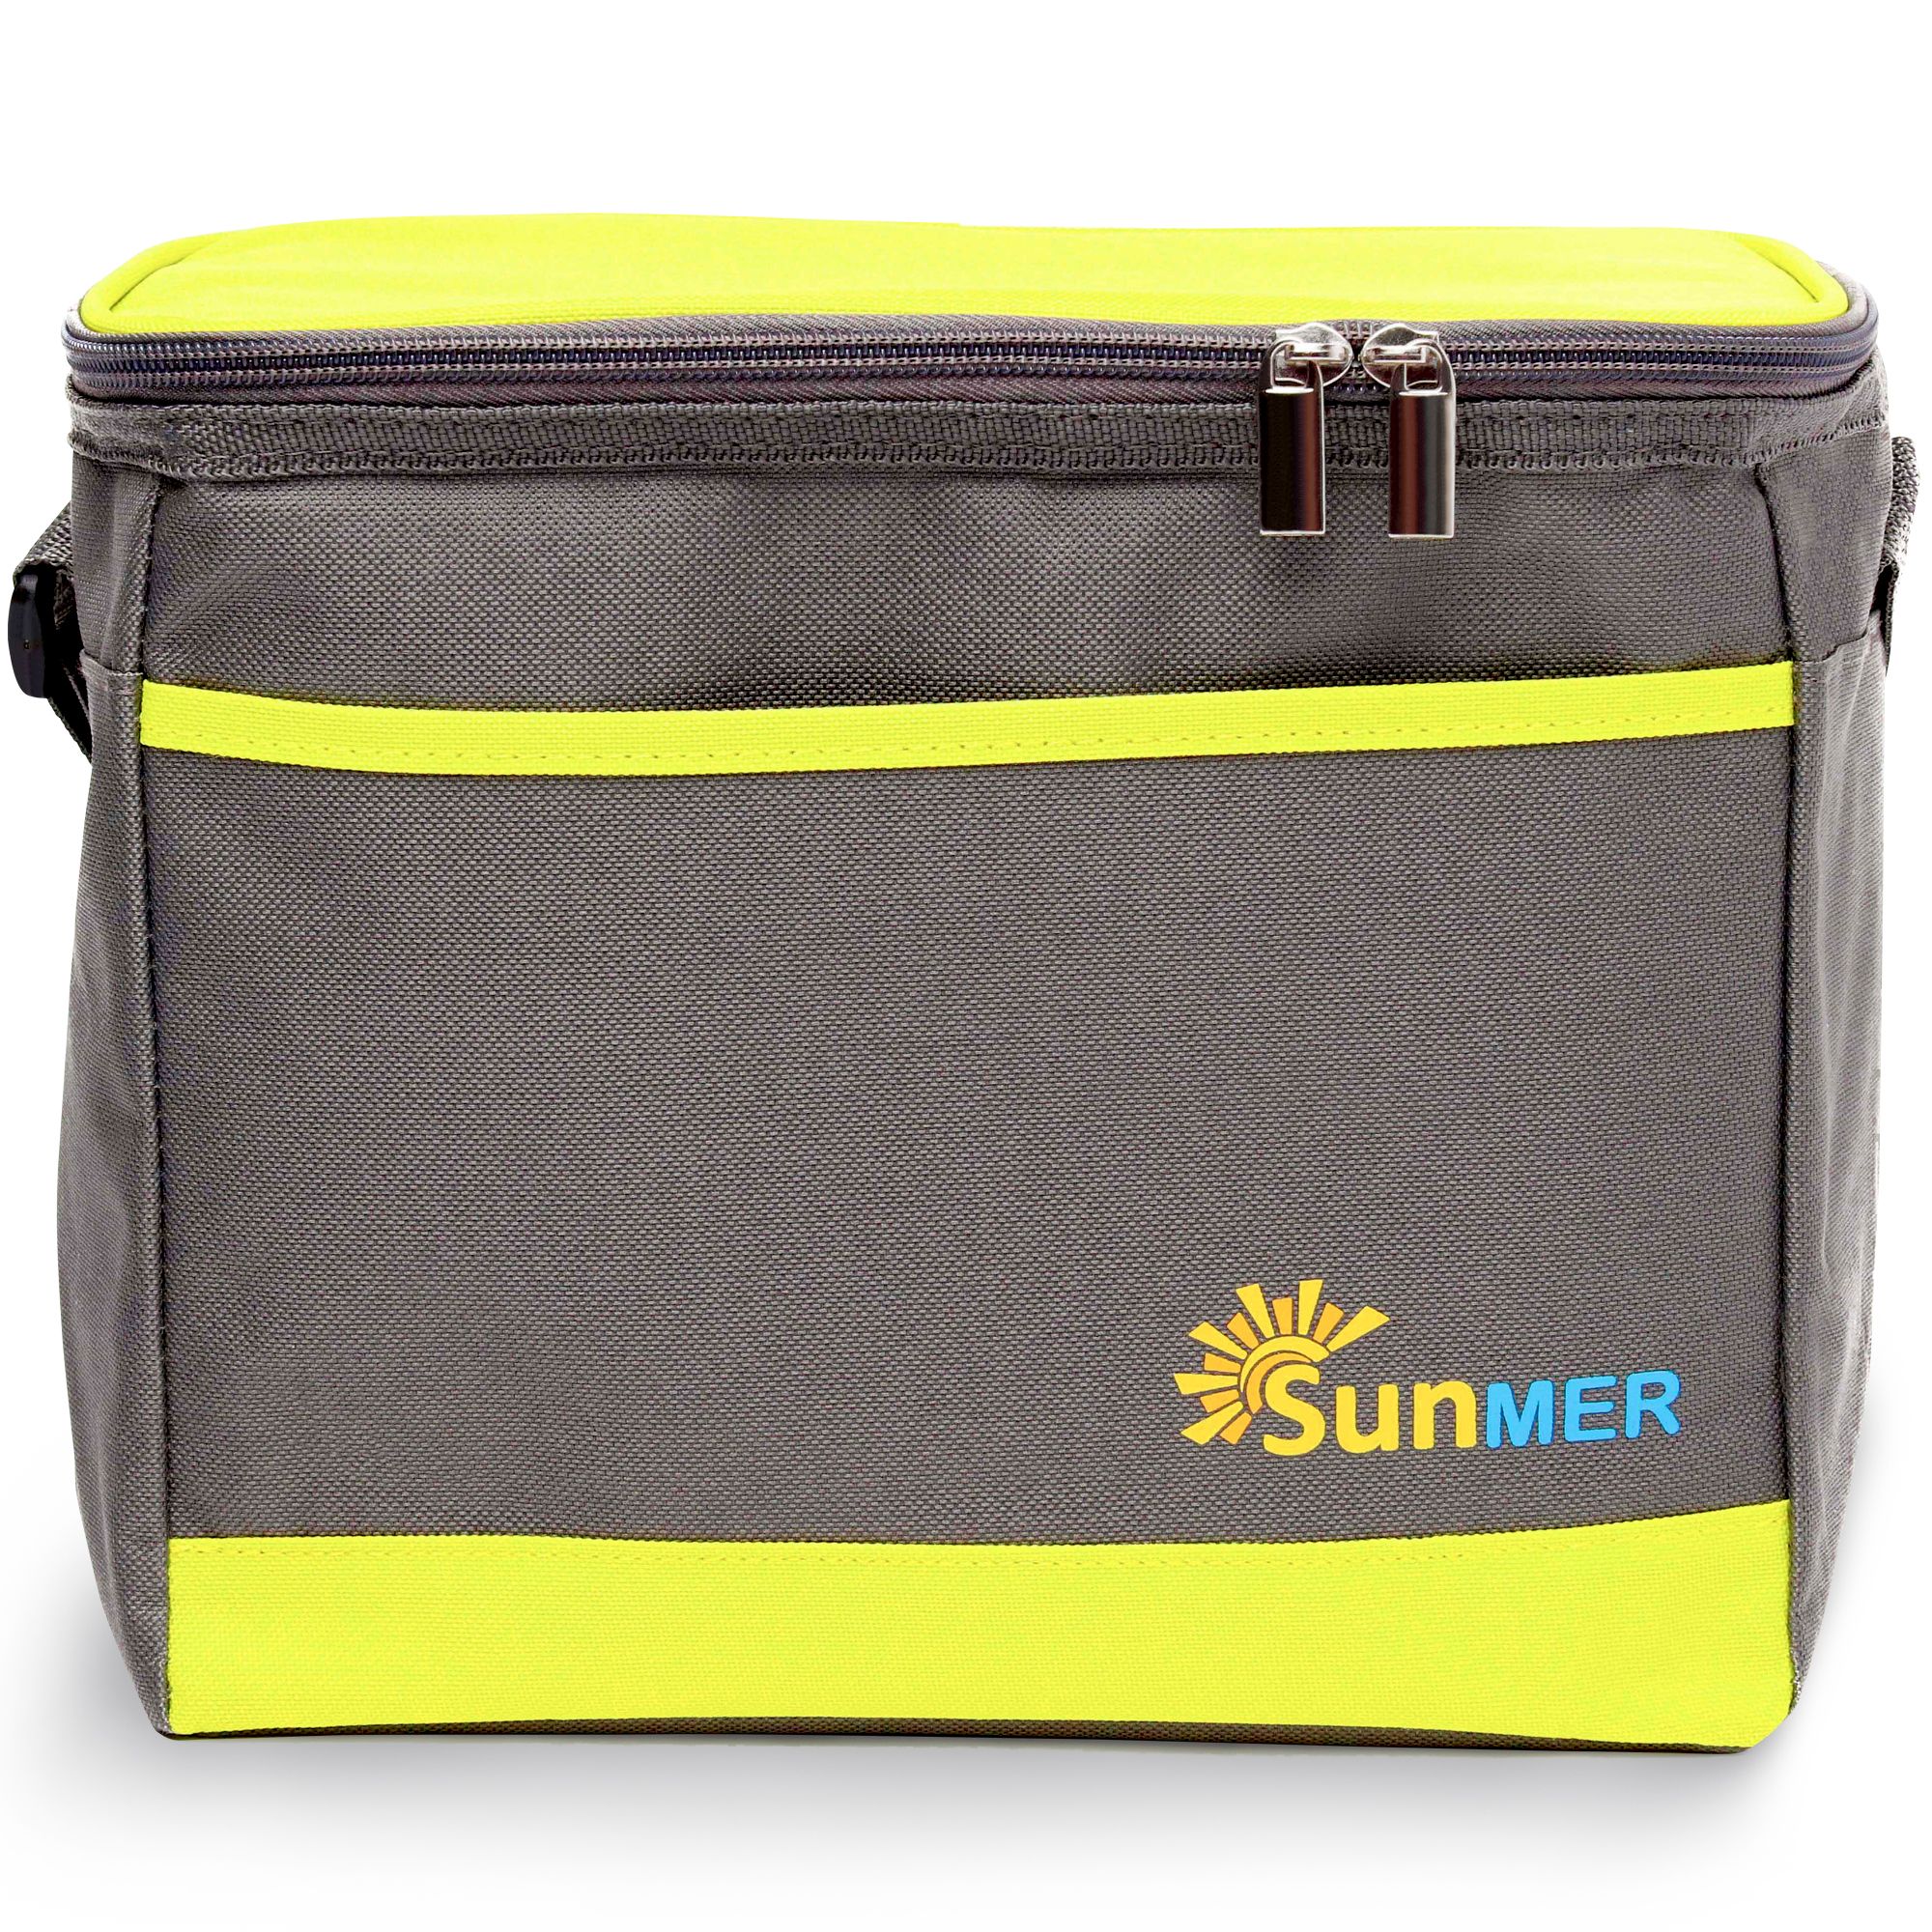 SUNMER 9L Cooler Bag With Shoulder Strap - Grey & Lime